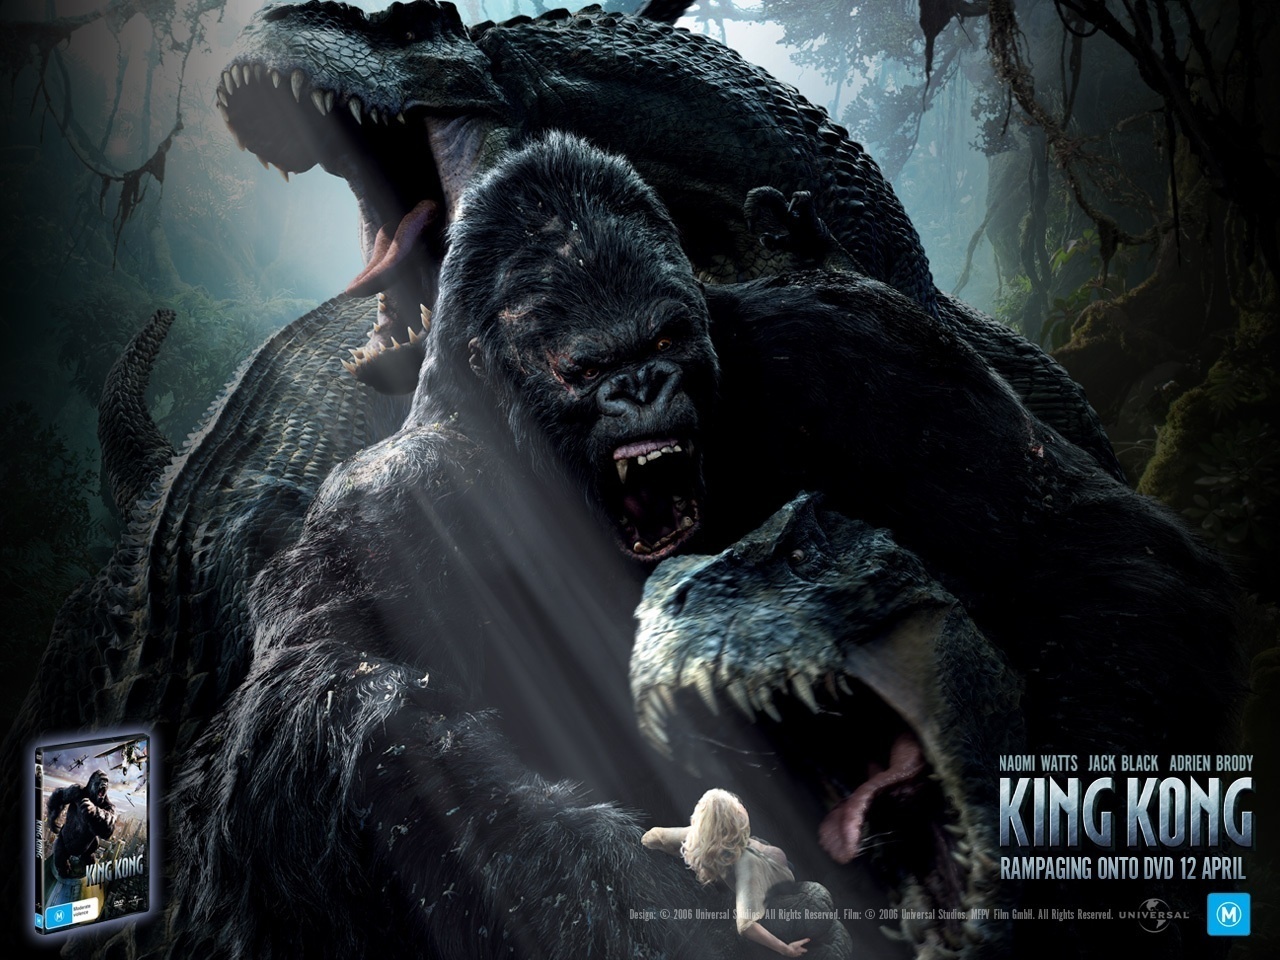 King Kong Images King Kong 2005 Hd Wallpaper And Background , HD Wallpaper & Backgrounds